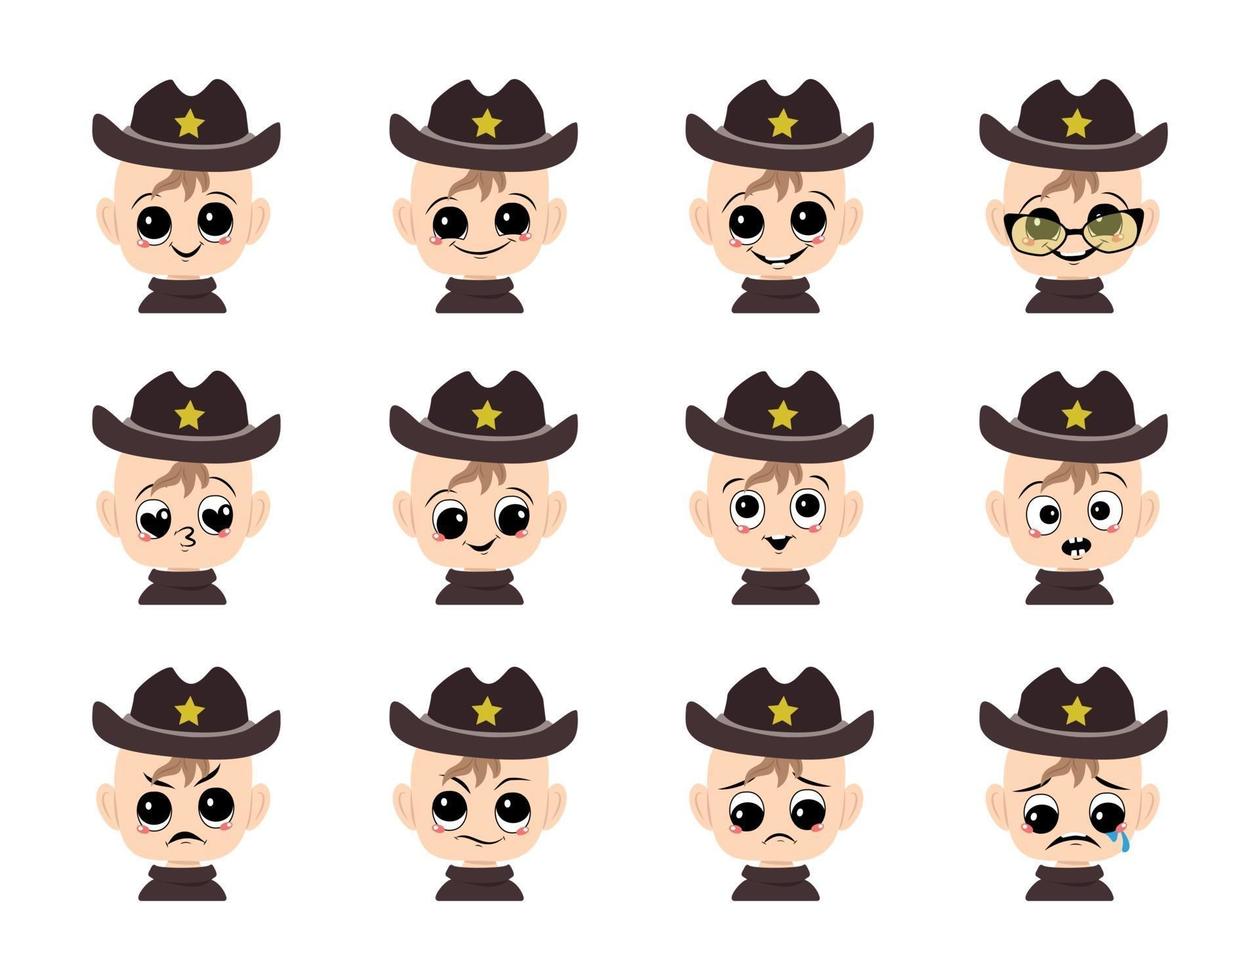 conjunto de avatar de bebé con ojos grandes y amplia sonrisa y diferentes emociones en sombrero de sheriff con estrella amarilla. niño lindo con cara alegre, triste o enojada disfrazada de carnaval. cabeza de niño con expresión vector